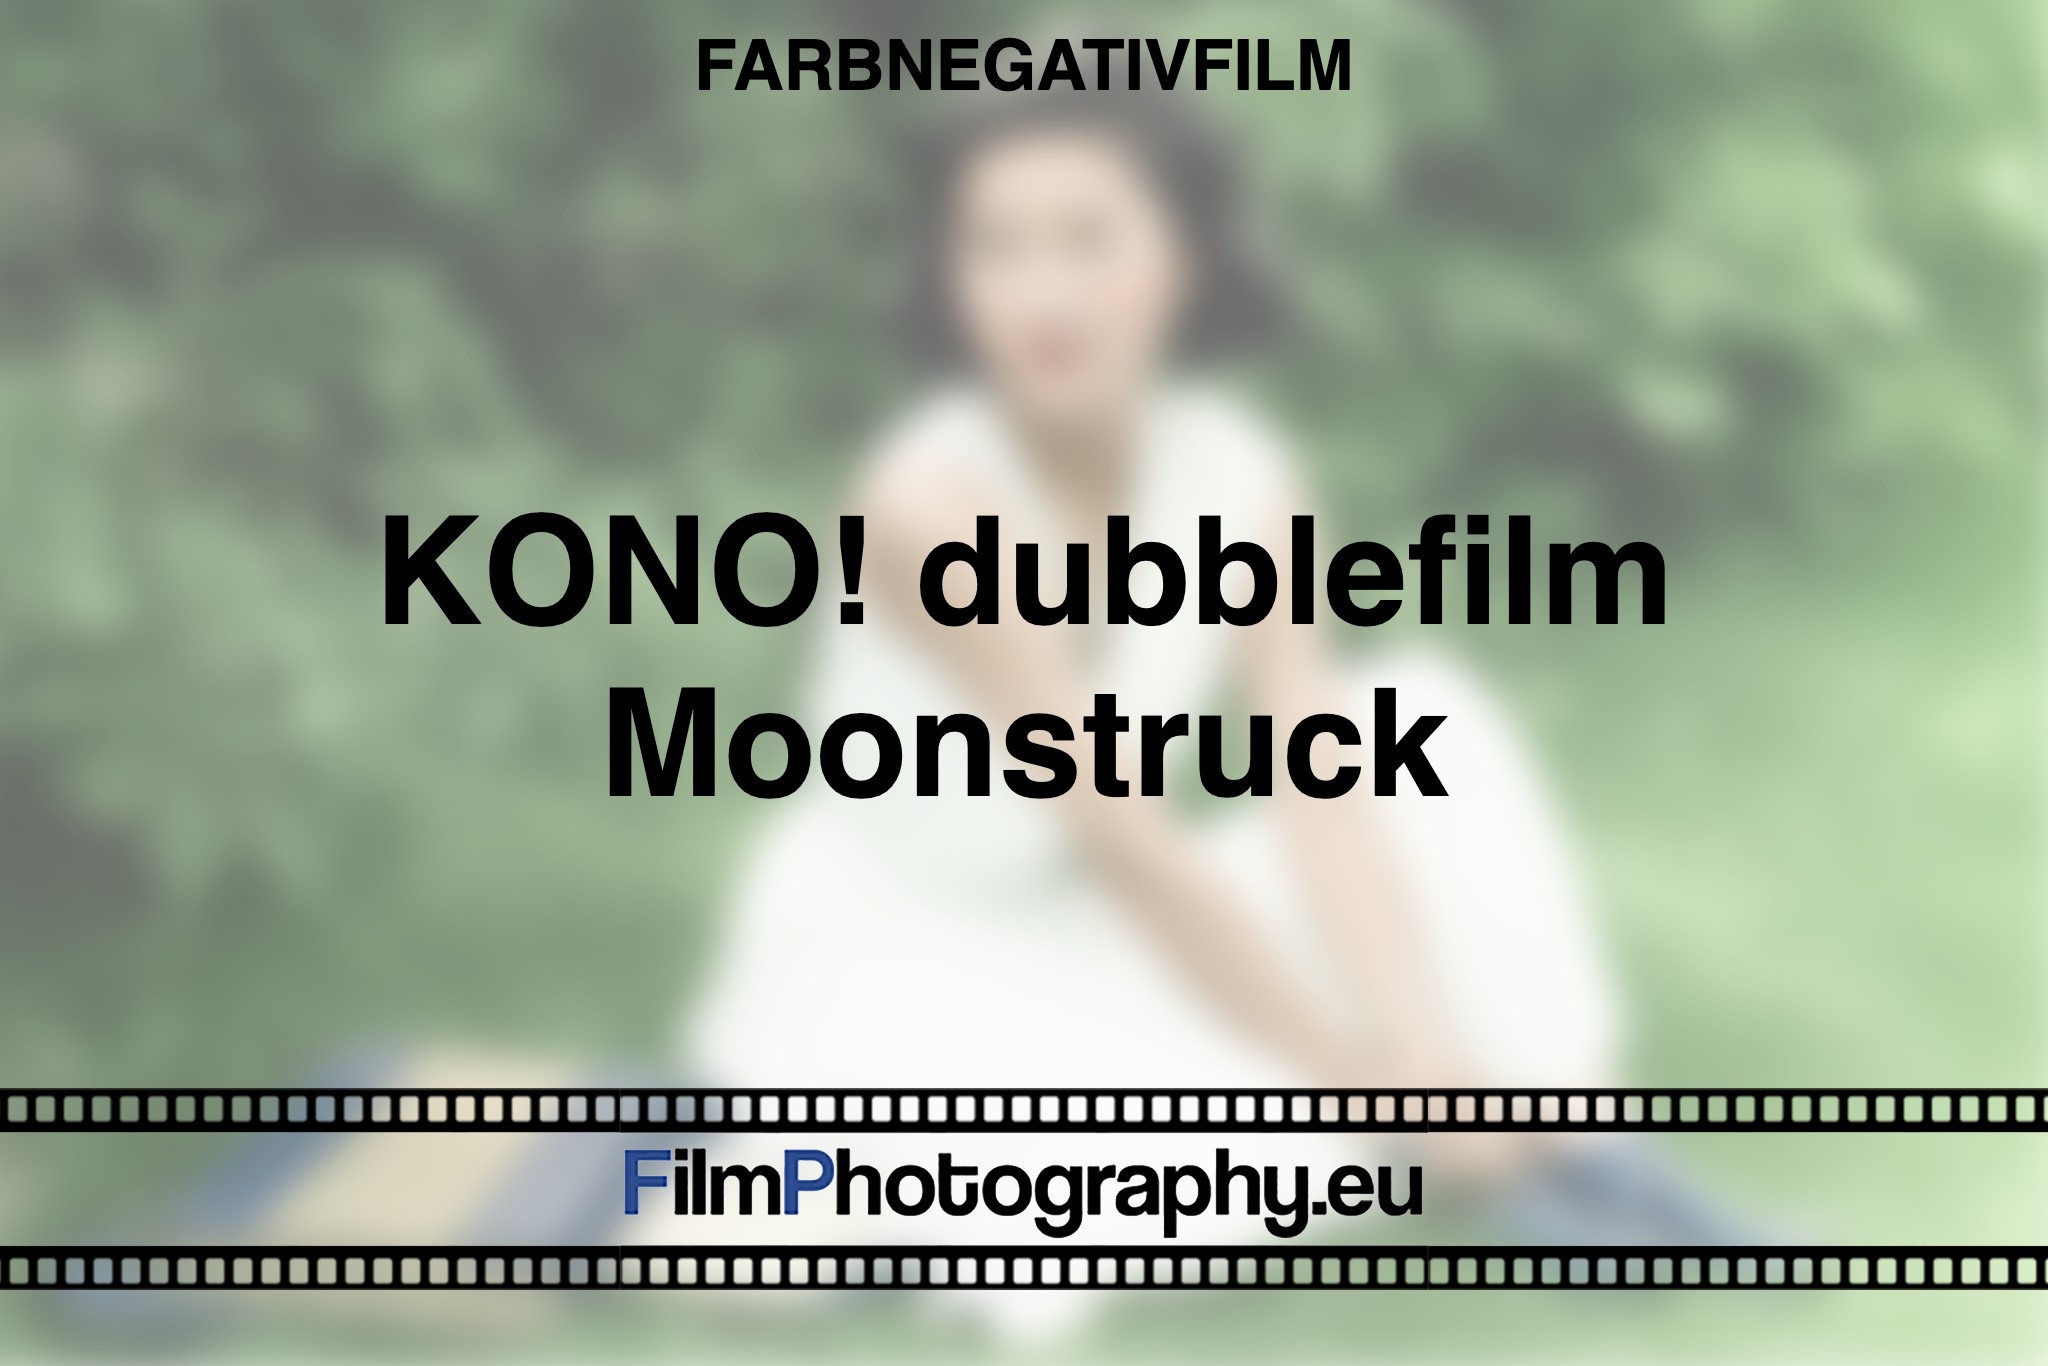 kono-dubblefilm-moonstruck-farbnegativfilm-bnv